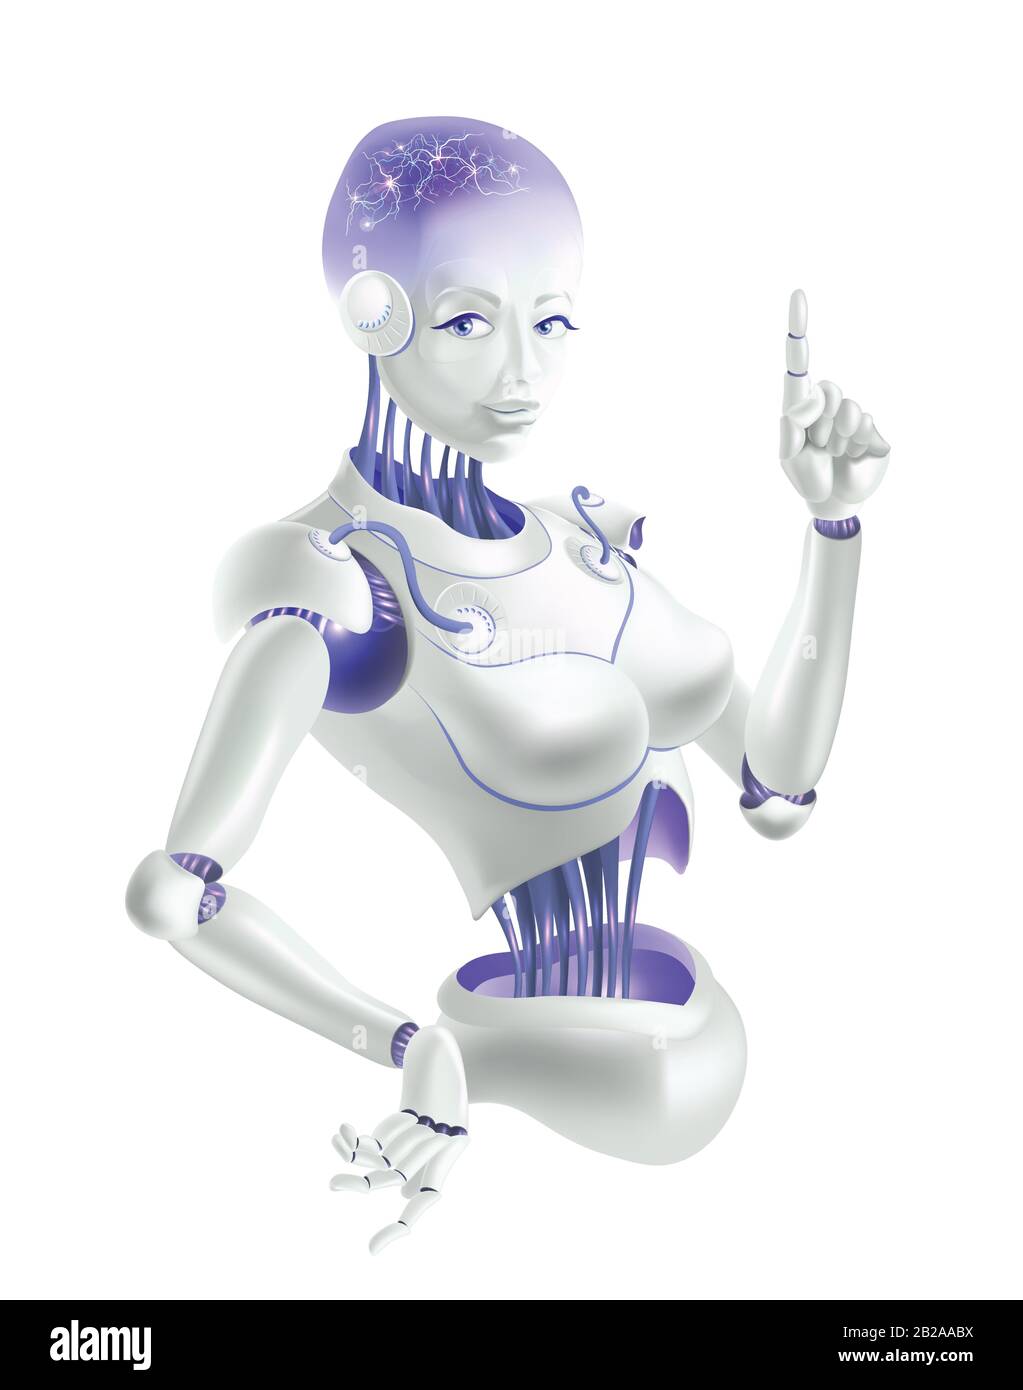 Eine Roboterfrau, die einen Zeigefinger nach oben hält. Neuronen befinden sich auf den Drähten des Roboters. Stock Vektor